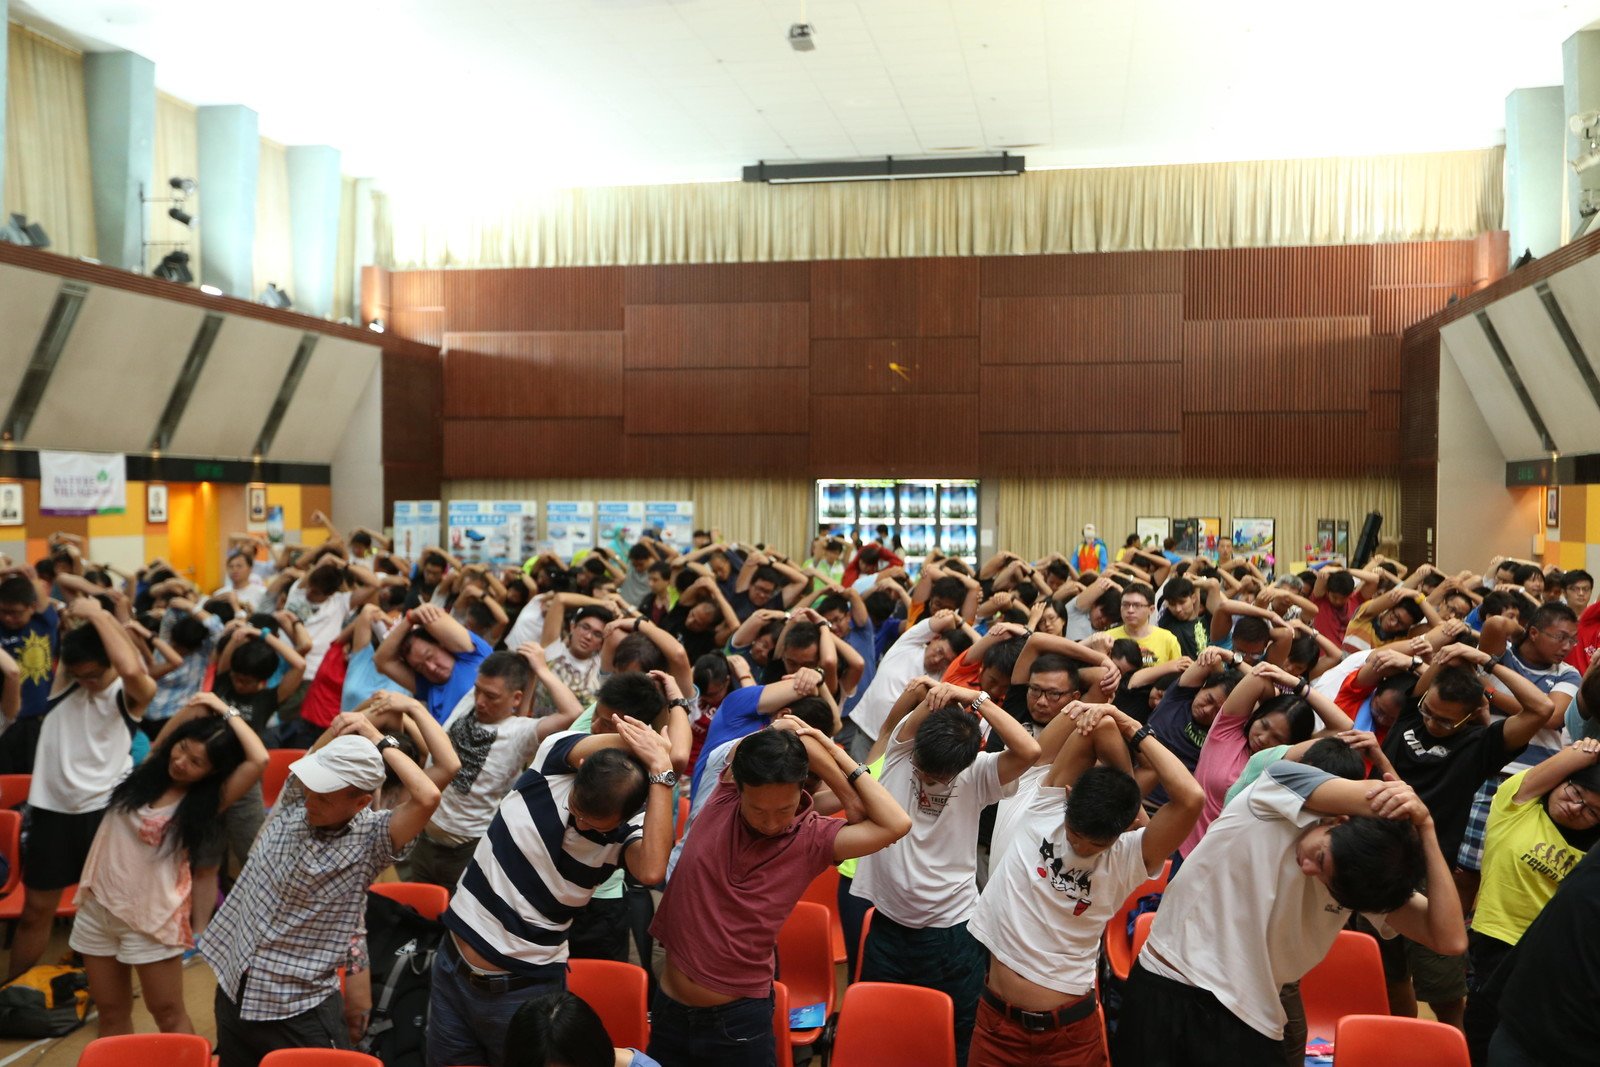 逾300位參加者在「樂施毅行者2014」簡介會上進行伸展熱身練習